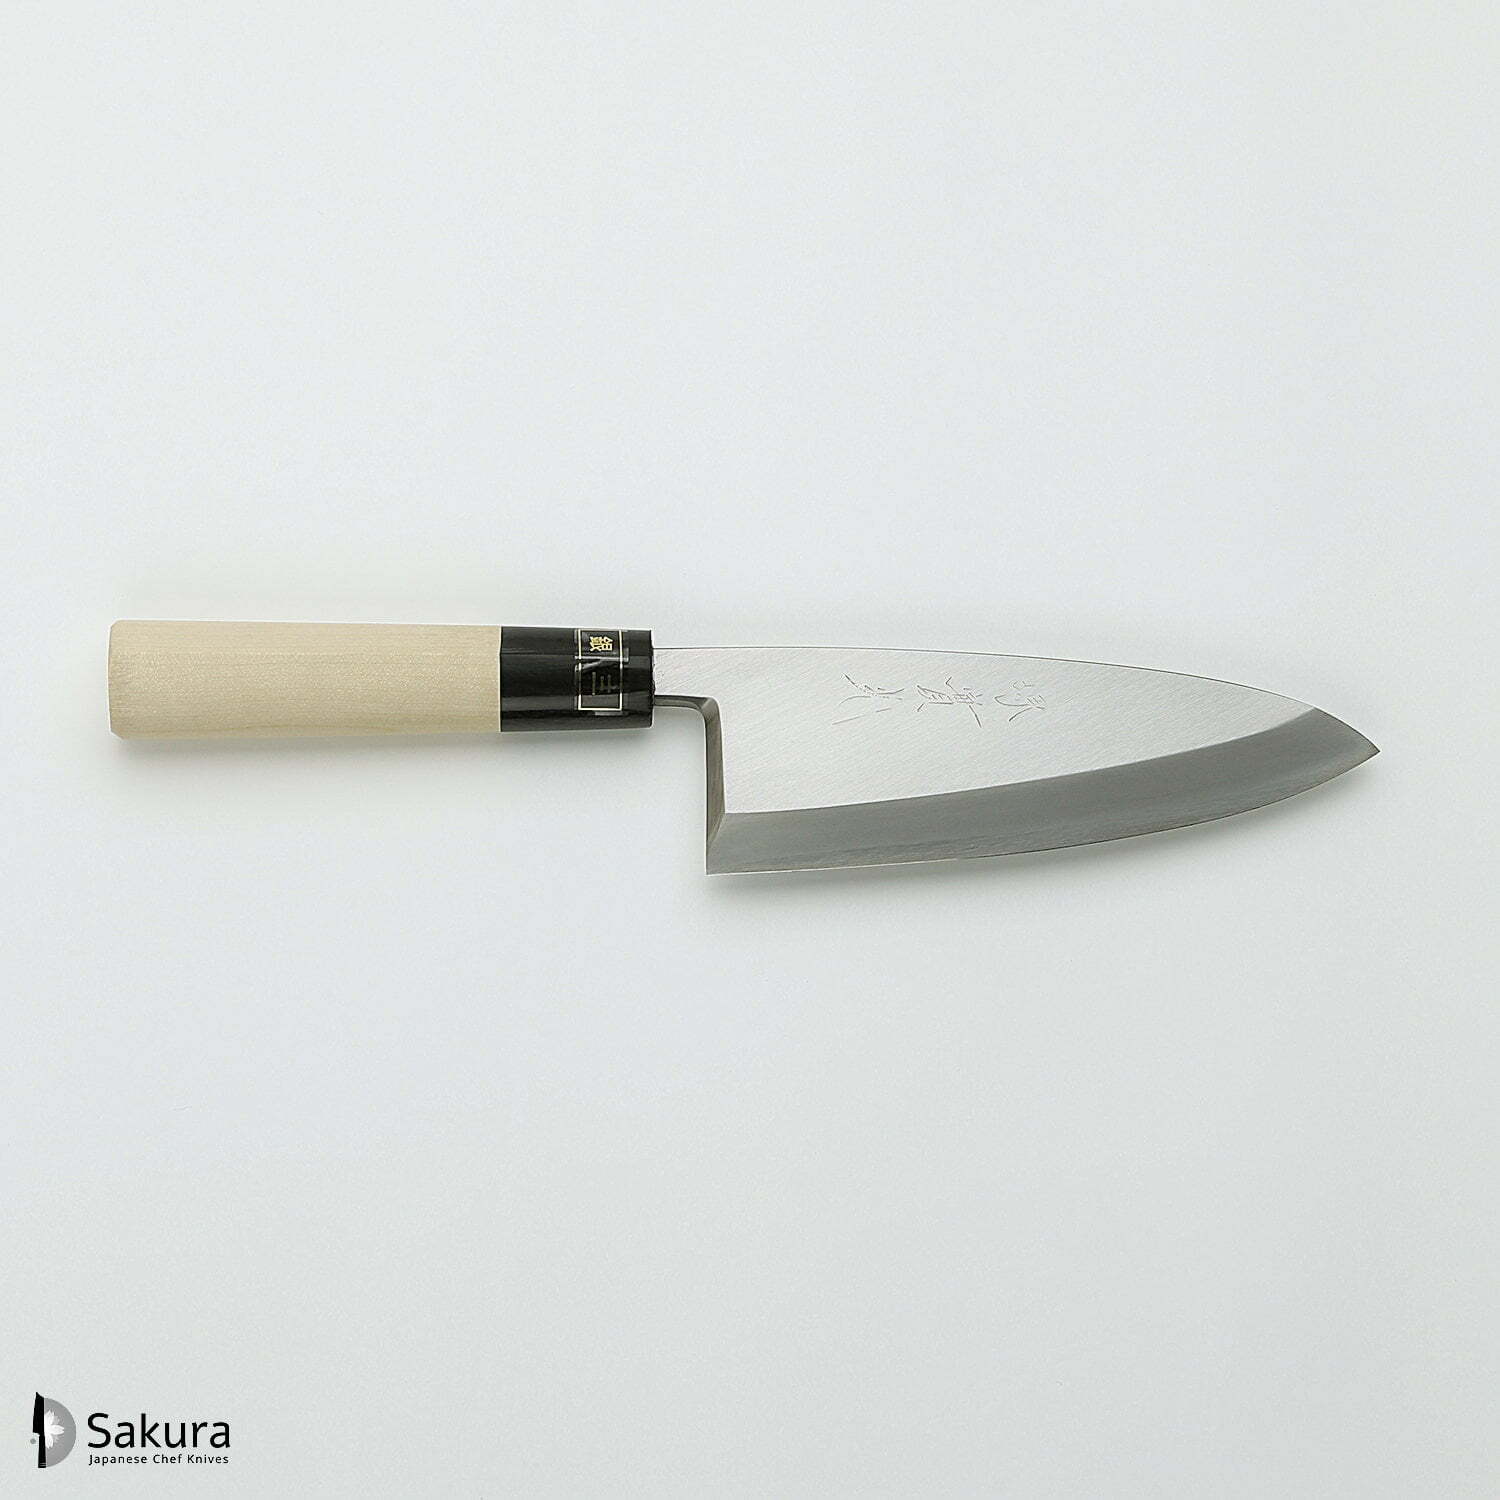 סכין פילוט דגים דֶּבָּה 150מ״מ מחוזקת 3 שכבות: פלדת פחמן יפנית מתקדמת מסוג Ginsan Silver#3 עטופה פלדת אל-חלד גימור מט מלוטש ג׳יקו סאקאיי יפן